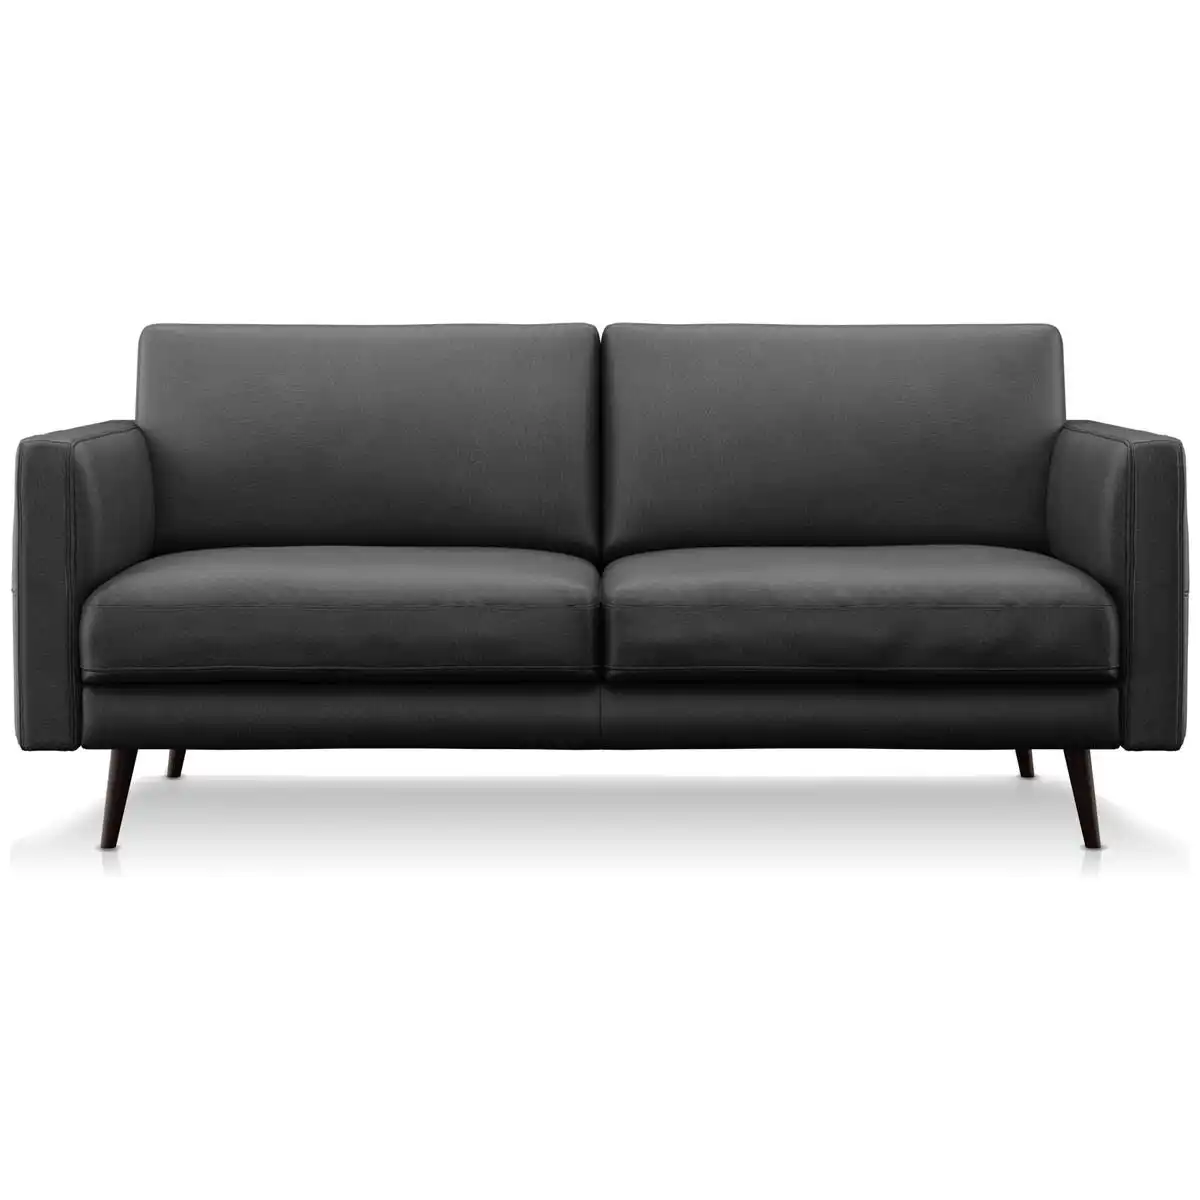 Natuzzi Editions Destrezza Black Leather Sofa